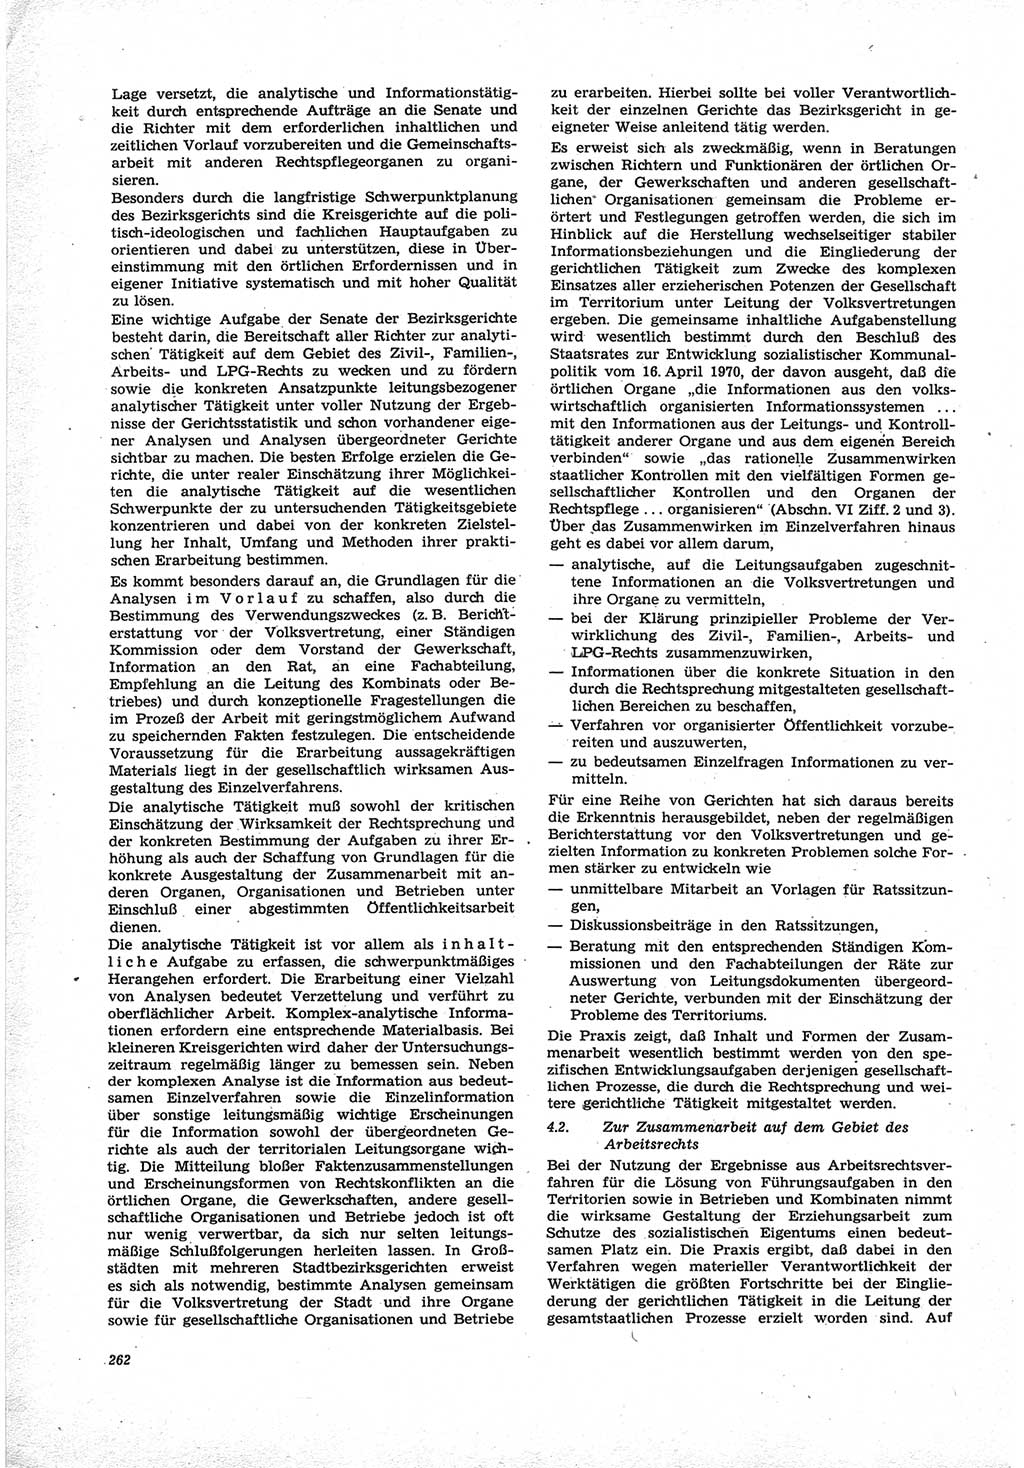 Neue Justiz (NJ), Zeitschrift für Recht und Rechtswissenschaft [Deutsche Demokratische Republik (DDR)], 25. Jahrgang 1971, Seite 262 (NJ DDR 1971, S. 262)